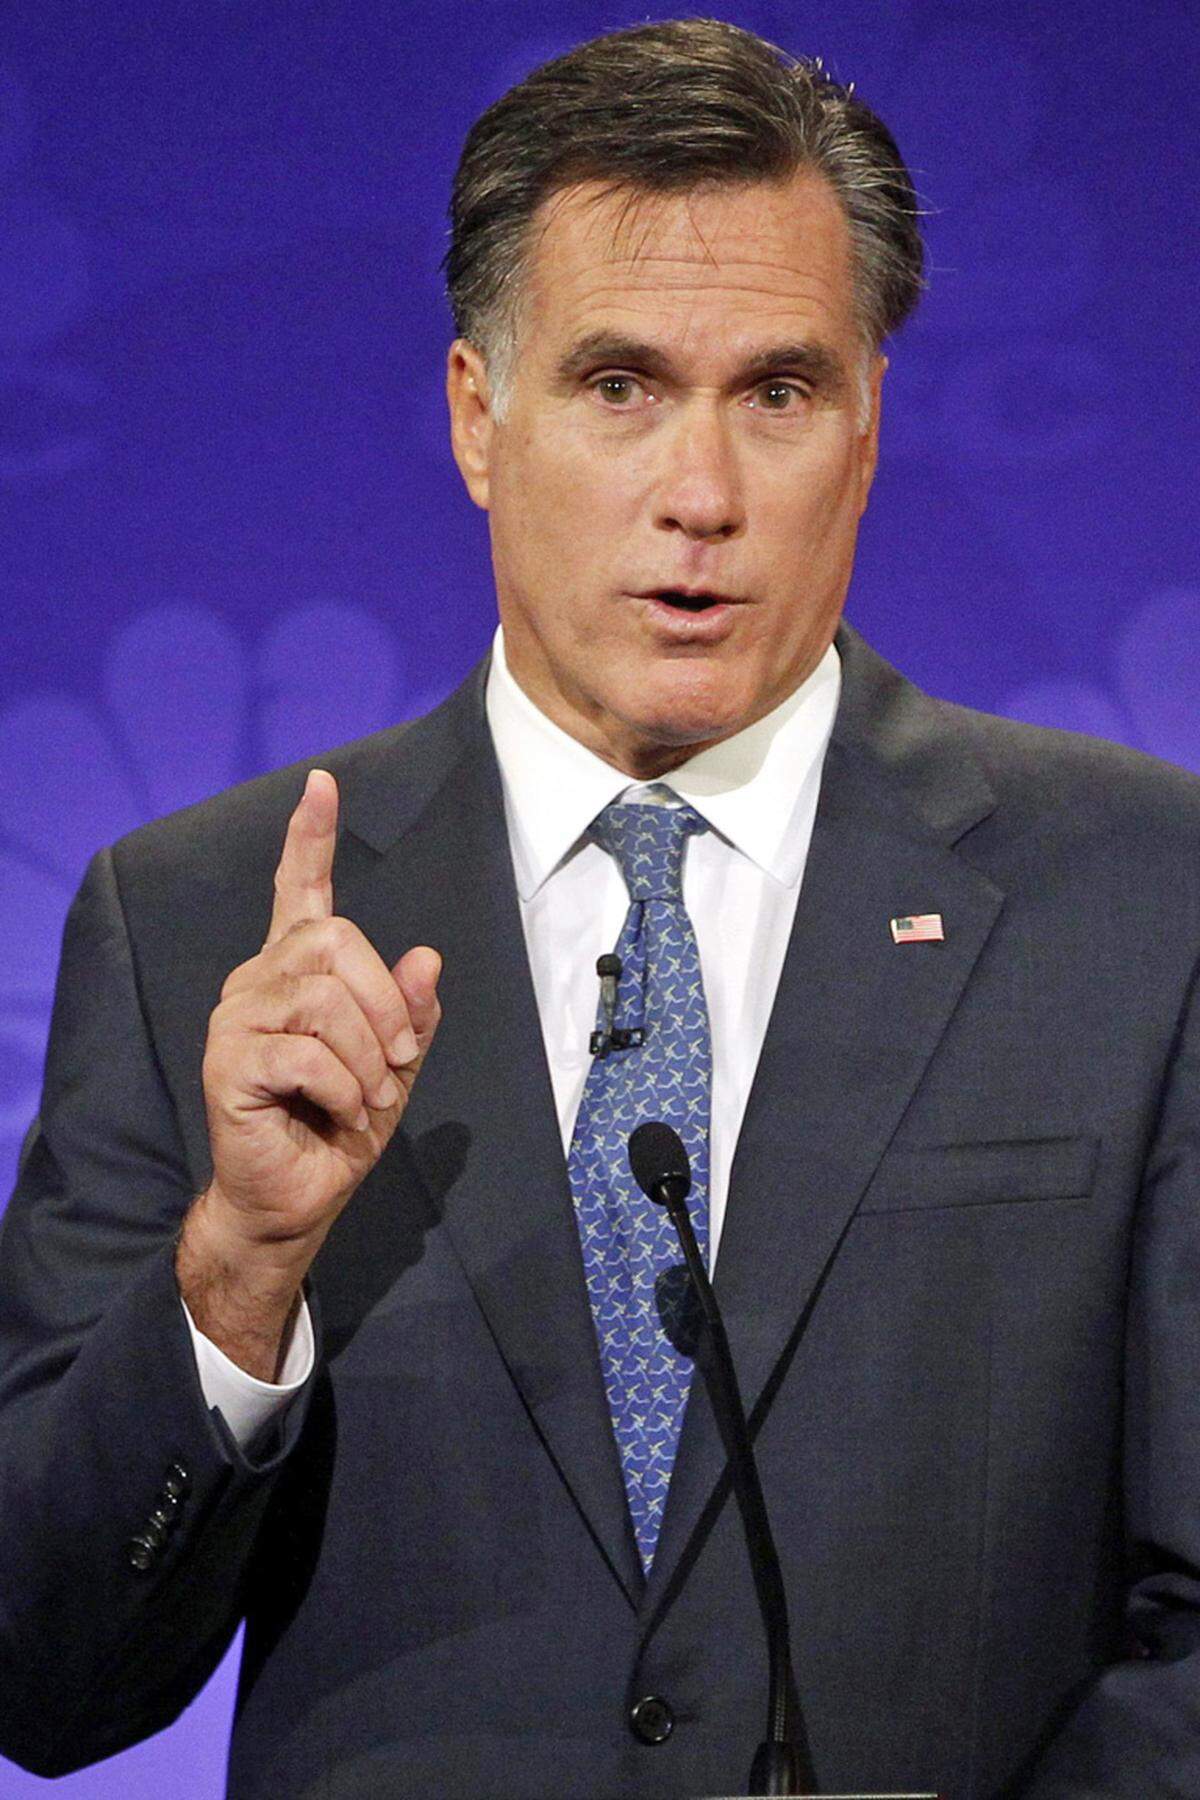 Nicht lumpen ließ sich auch Ex-Gouverneur Mitt Romney und landete prompt eine Top-Blamage: "Ich bin Mitt Romney und ja, das ist auch mein Vorname". Gut zu wissen oder?